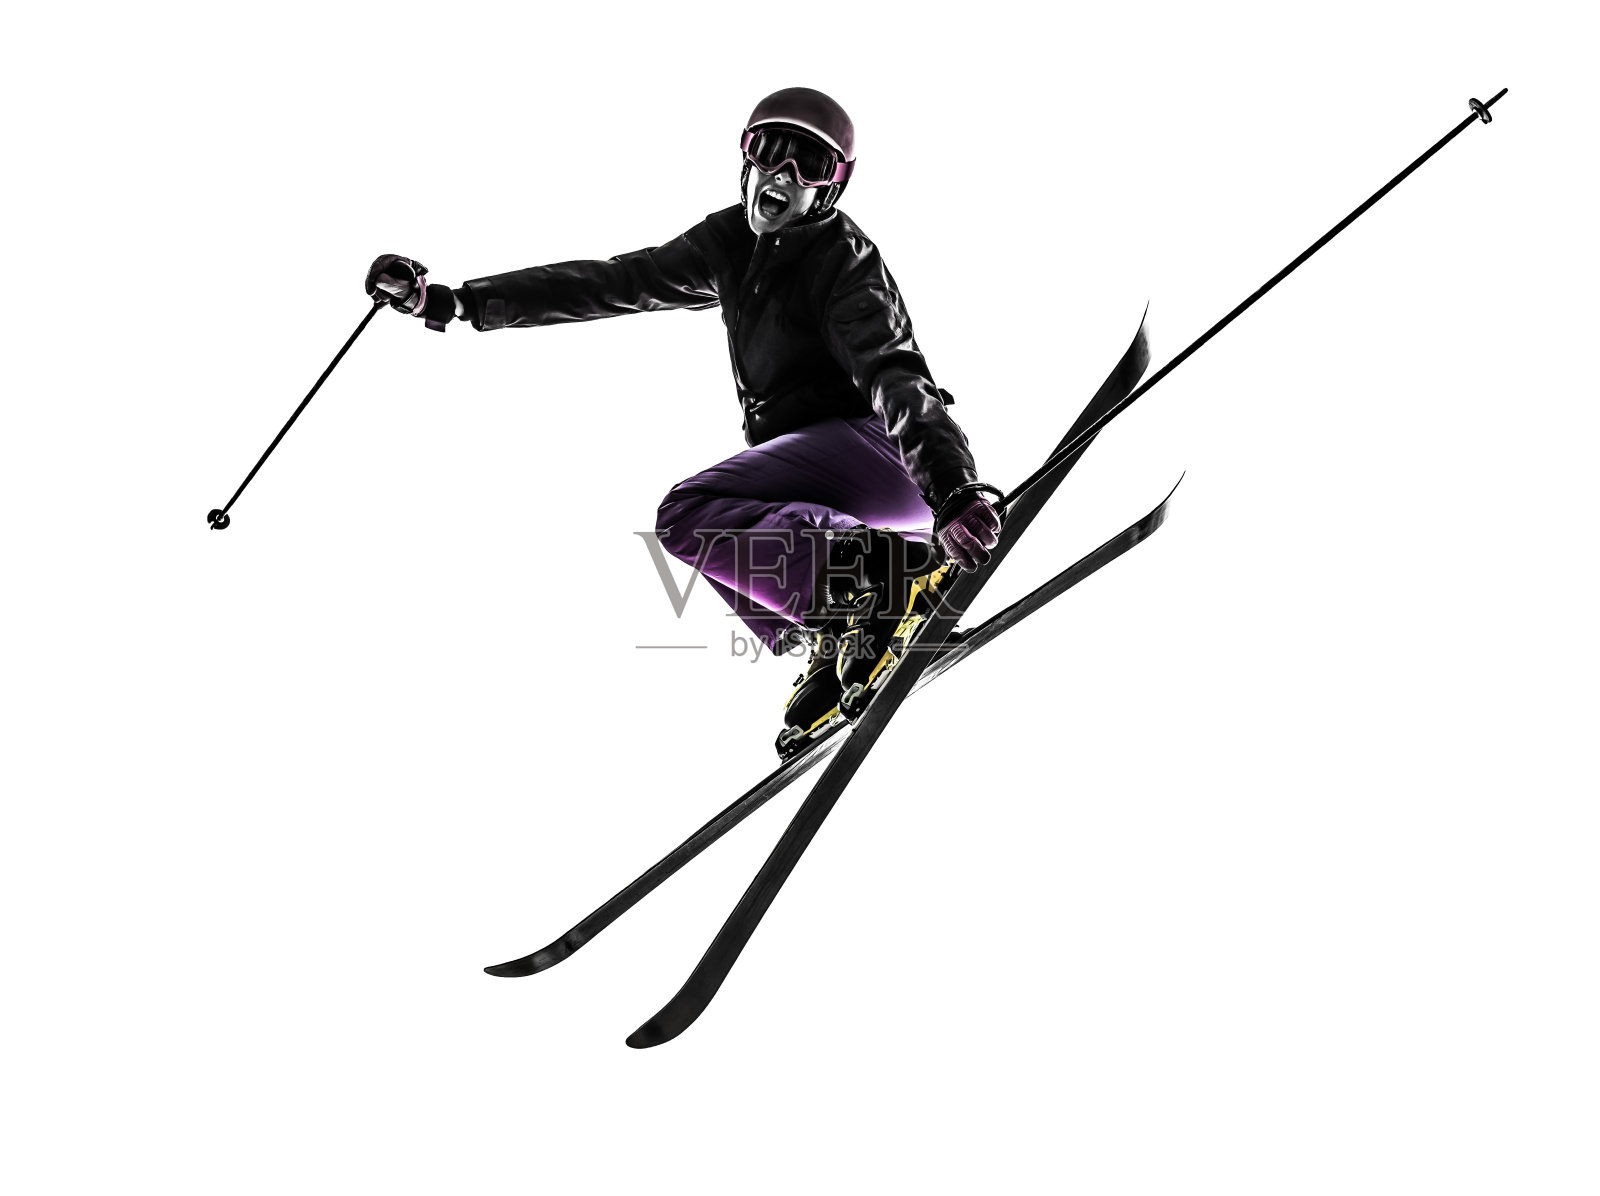 一名女子滑雪跳跃剪影照片摄影图片